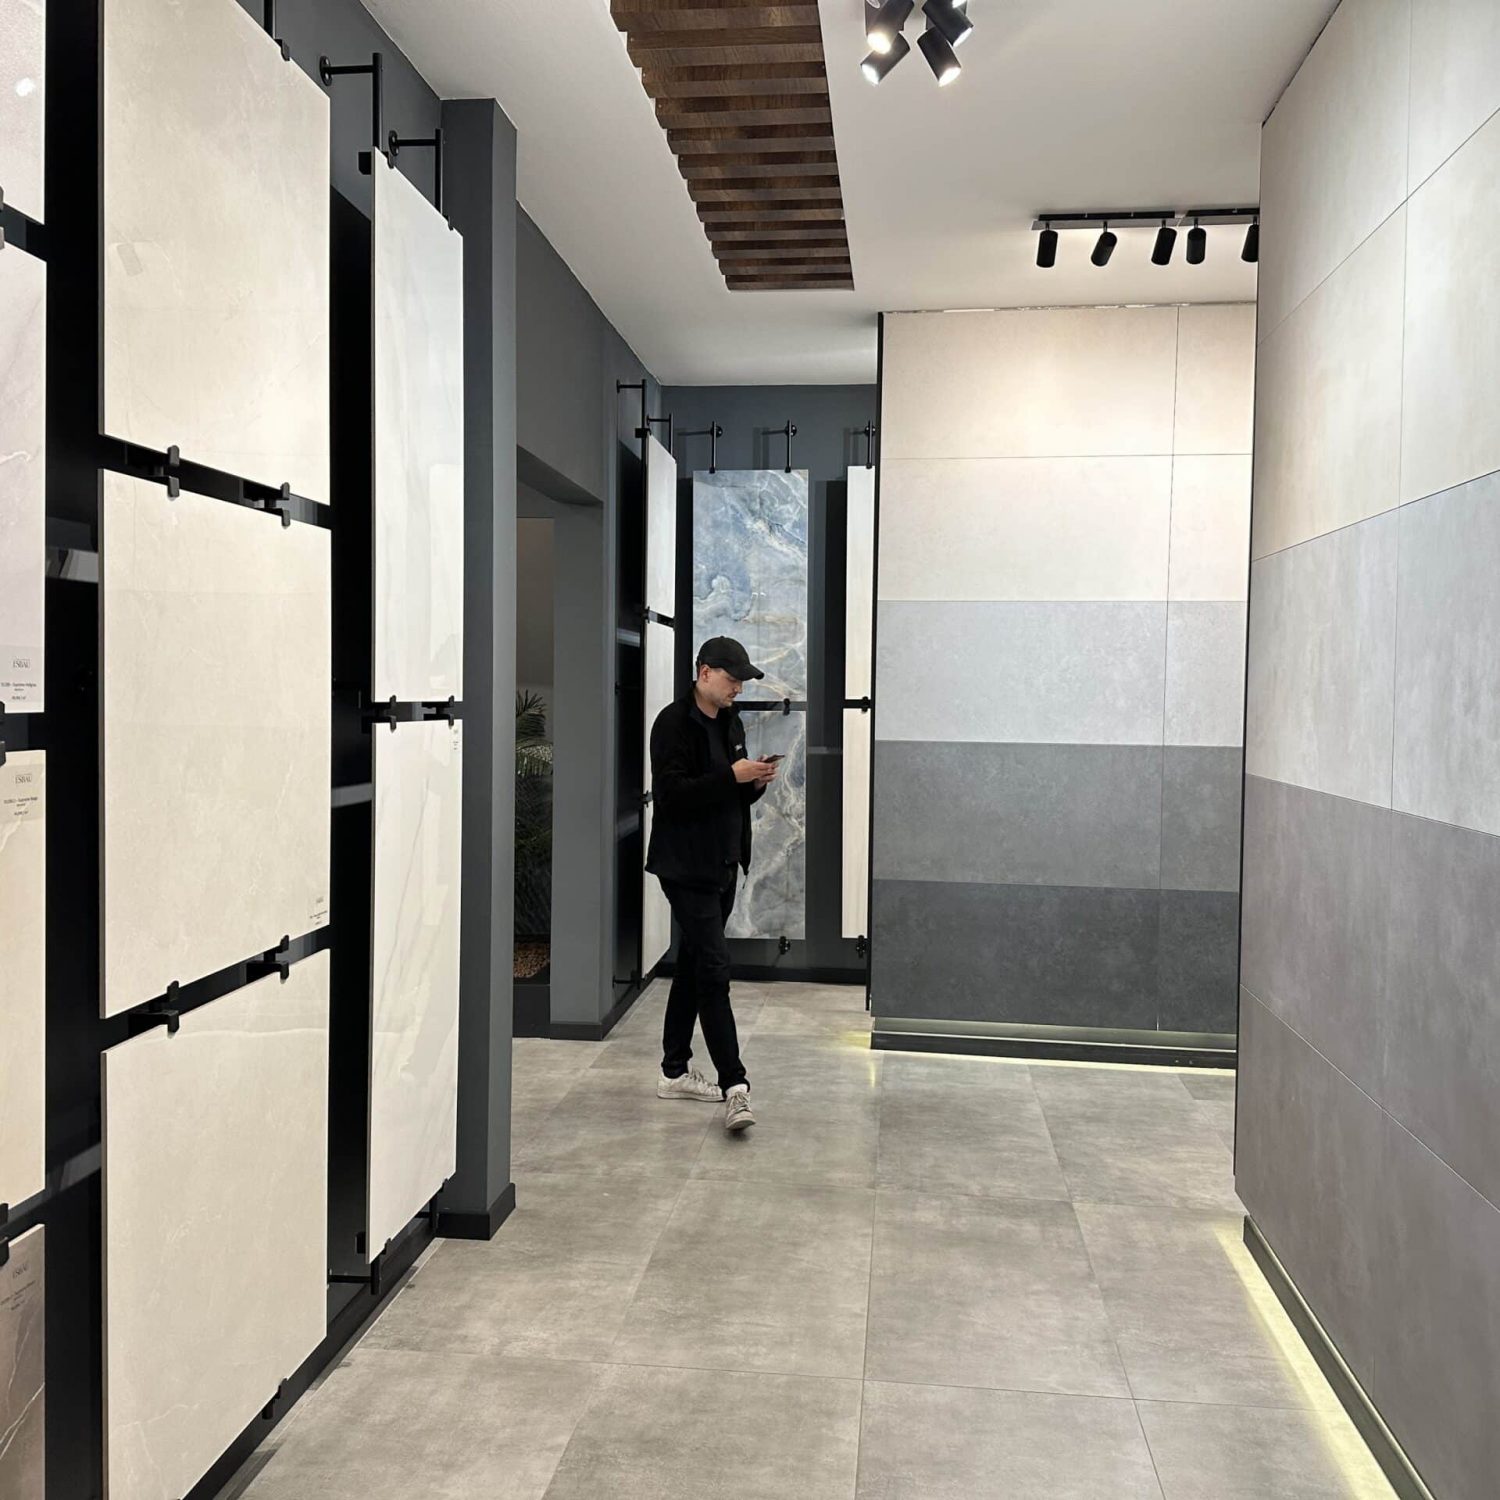 Beton und Zement Optik Fliesen sorgen für eine ruhige und einladende Atmosphäre im Badezimmer. Durch das Format der Fliese wirken die Räume wesentlich größer.